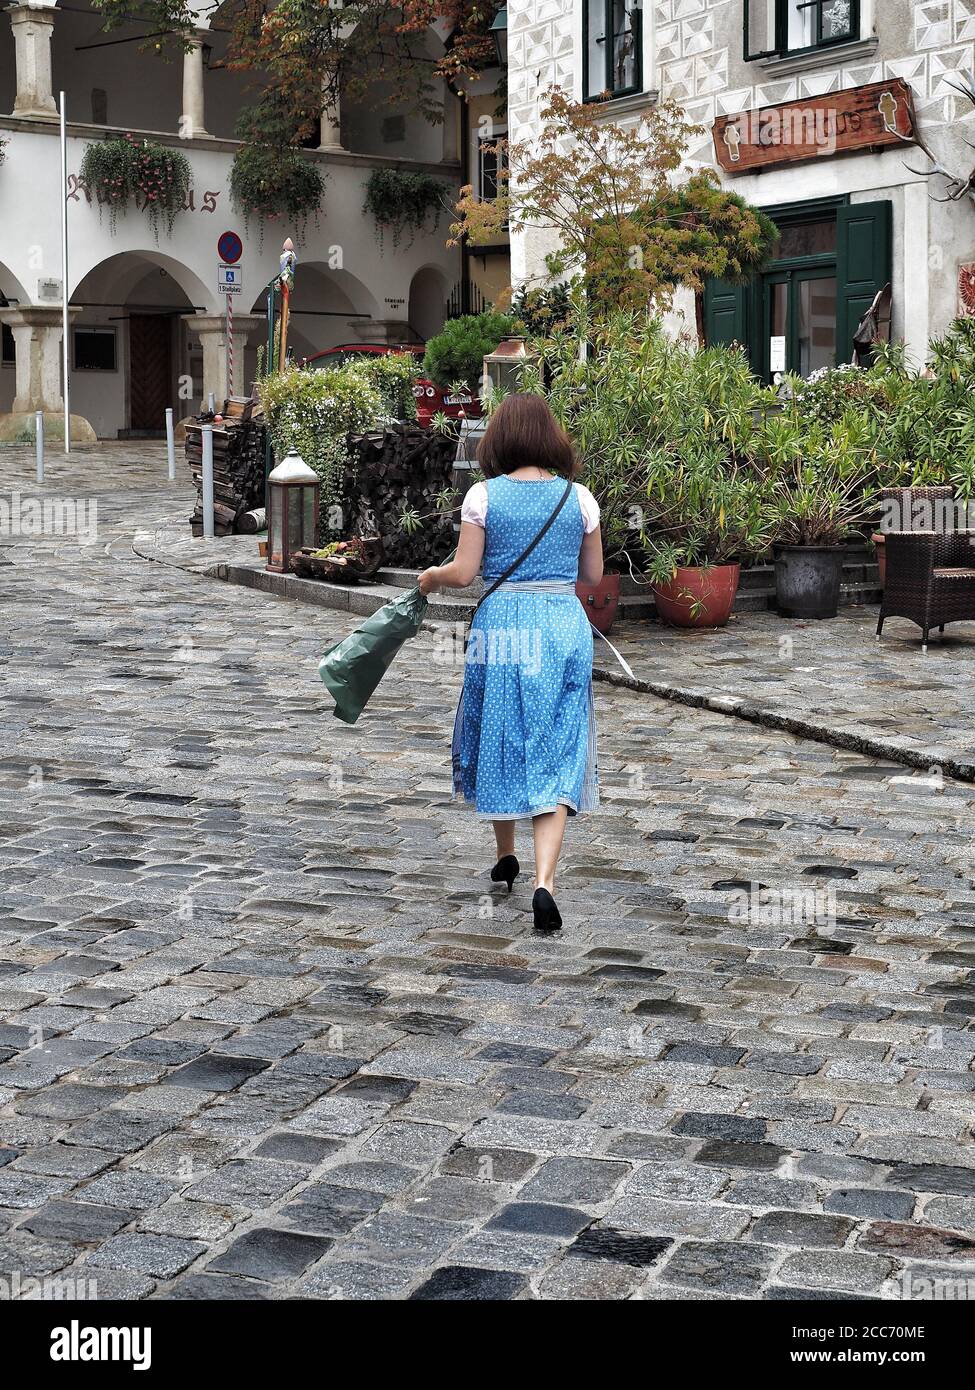 GUMPOLDSKIRCHEN, ÖSTERREICH - 09/01/2018. Kaukasische Frau in typisch blauem österreichischem Kostüm zu Fuß auf der Straße. Stockfoto